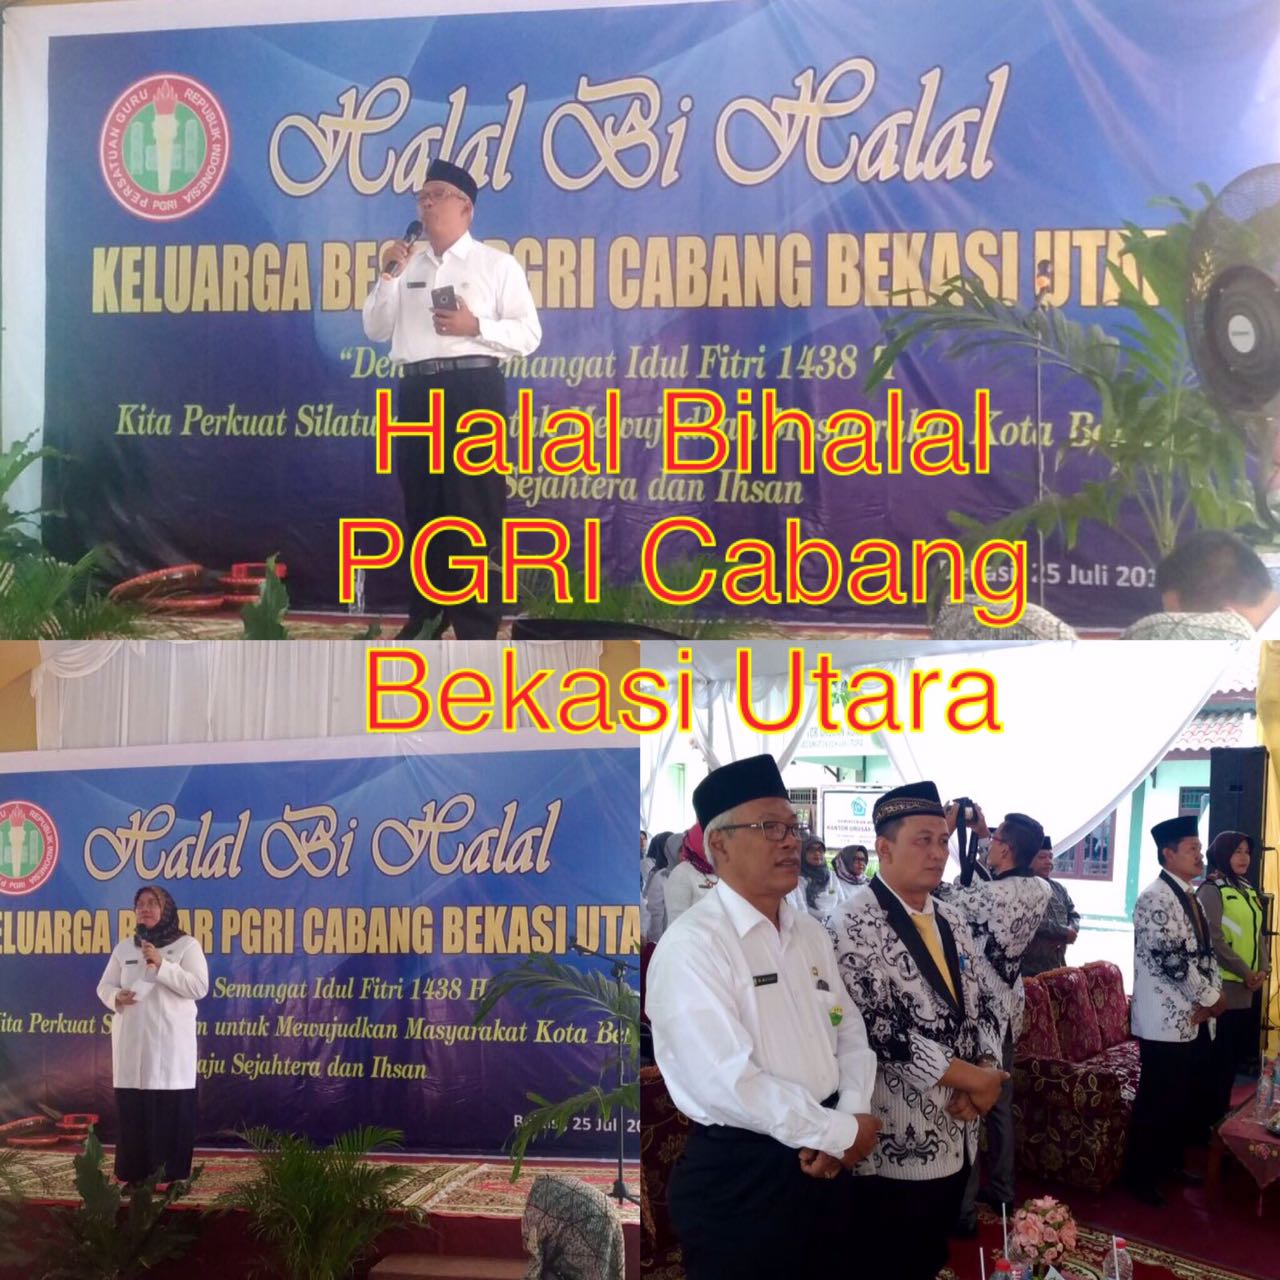 Kepala Dinas Pendidikan Kota Bekasi Menghadiri Halal Bihalal Keluarga Besar PGRI Kecamatan Bekasi Ut